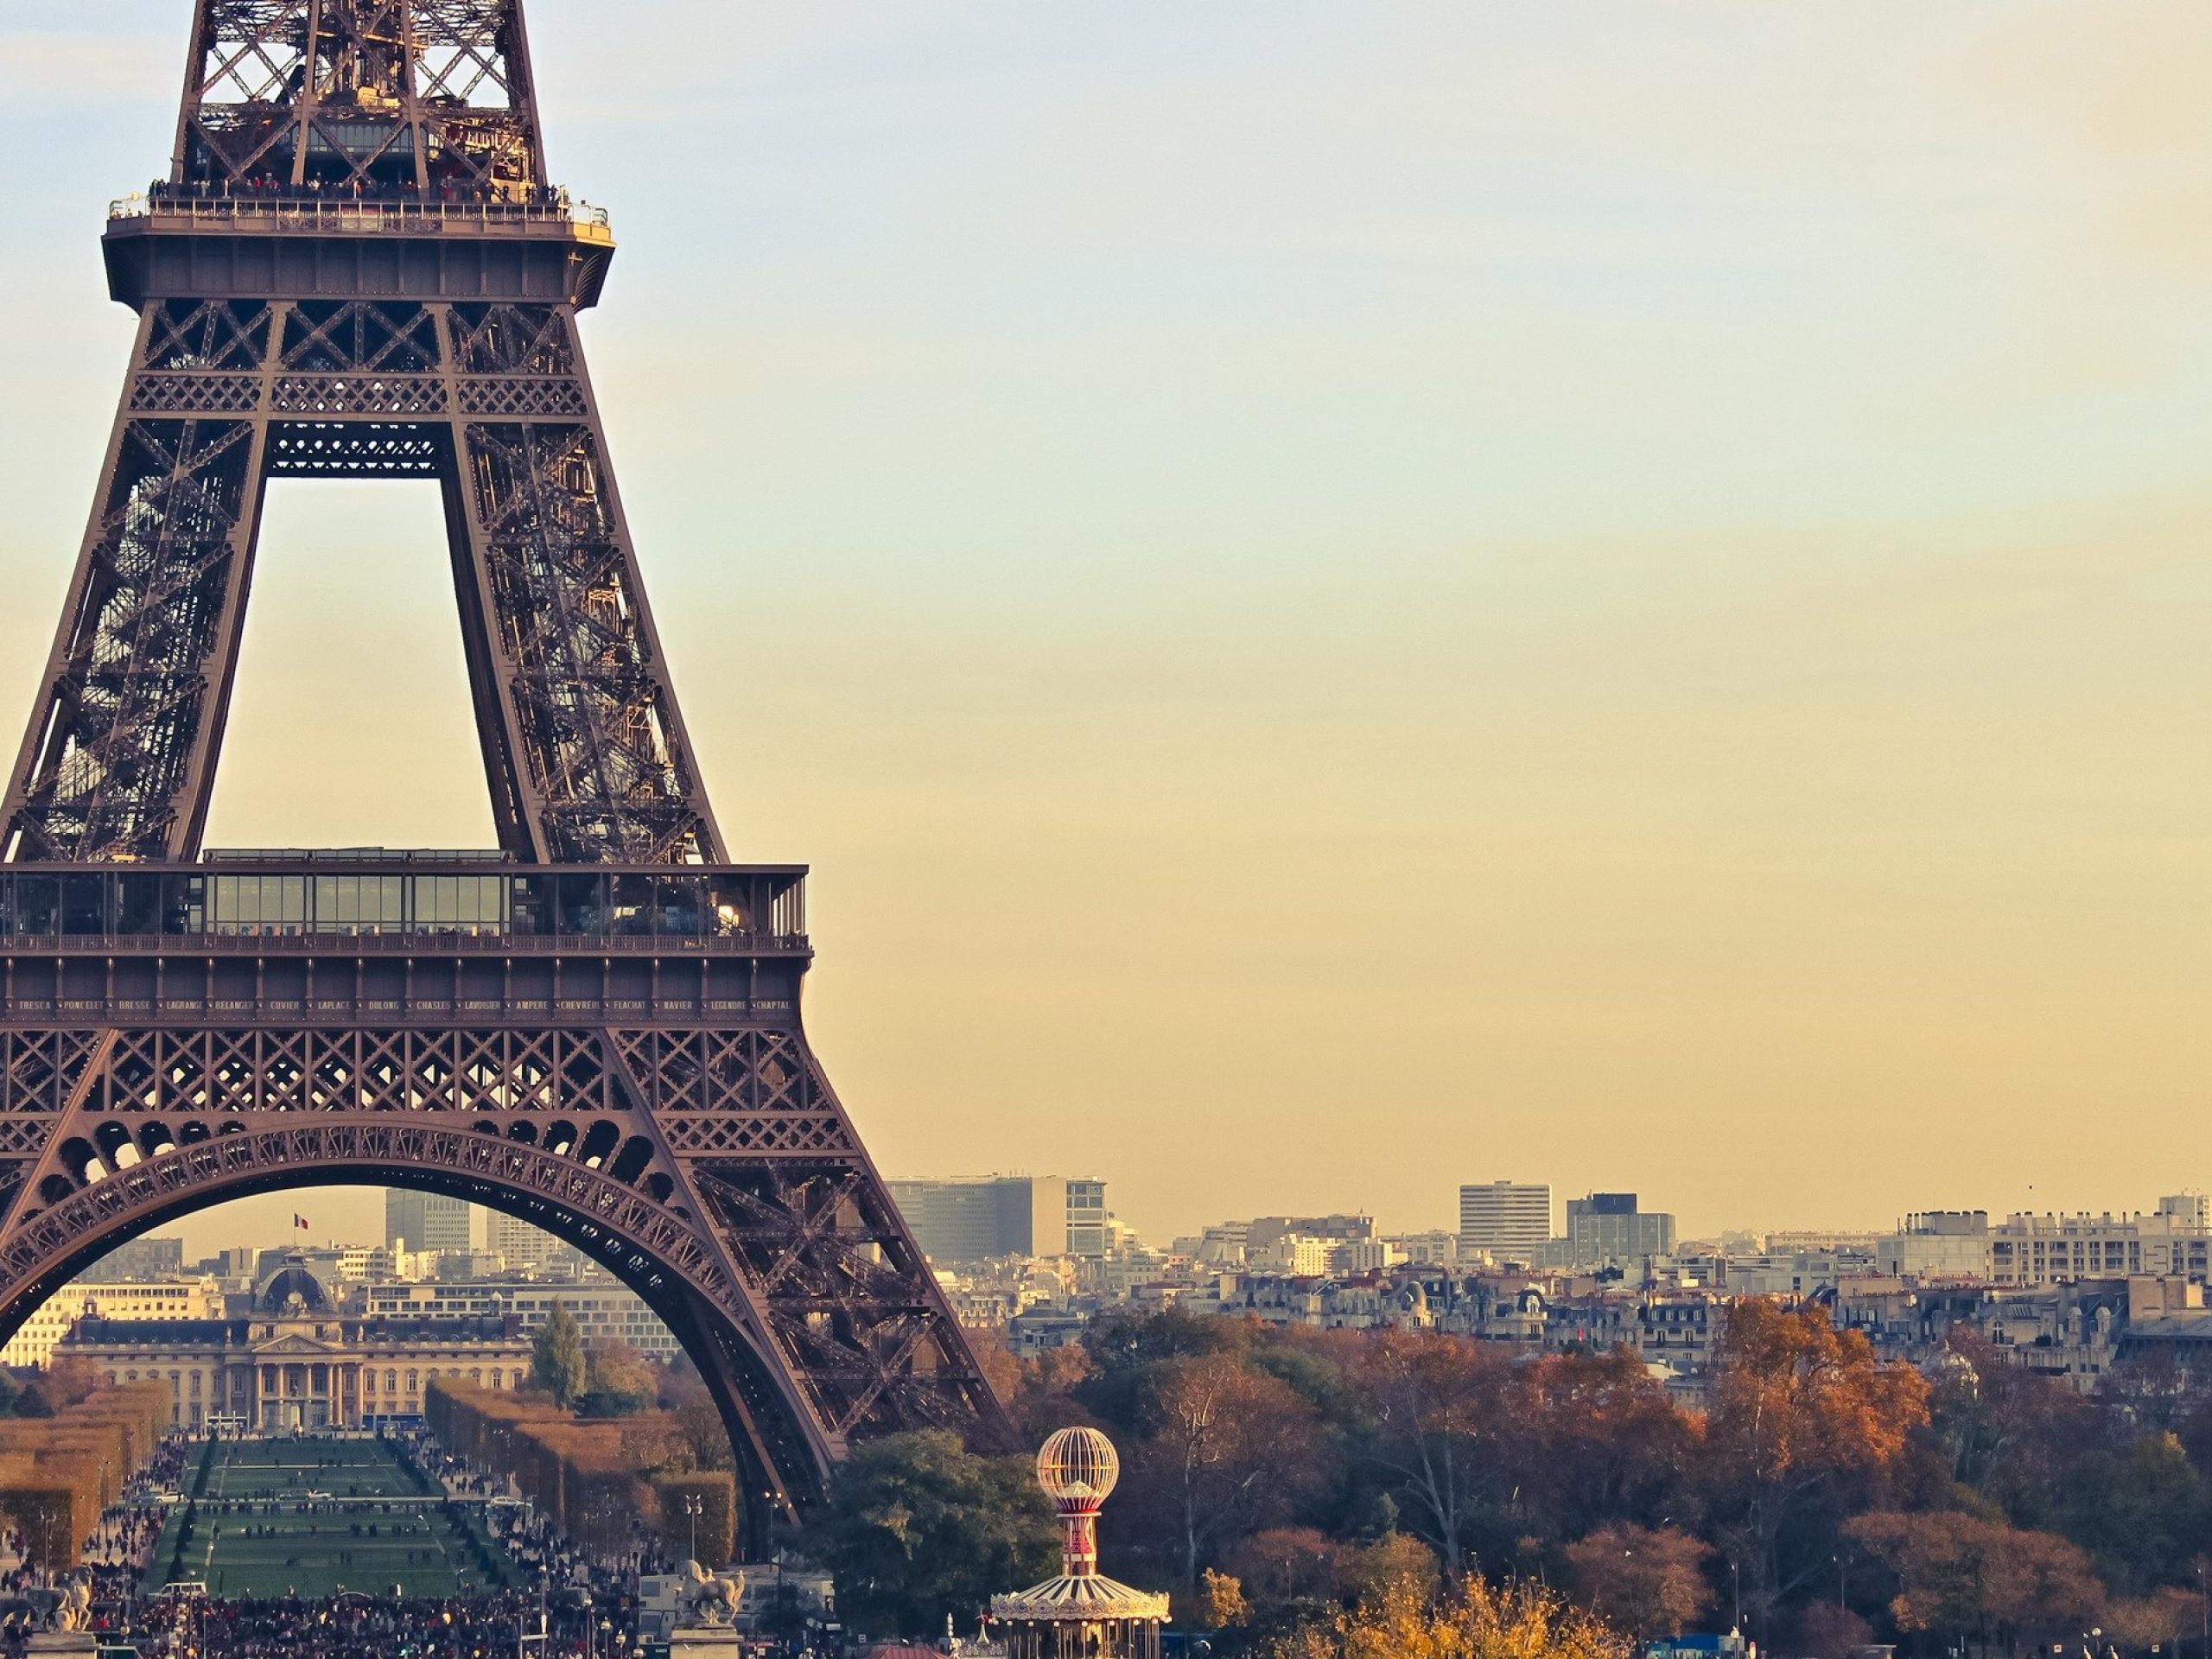 Những ý tưởng sáng tạo để chụp những bức ảnh độc đáo về tháp Eiffel